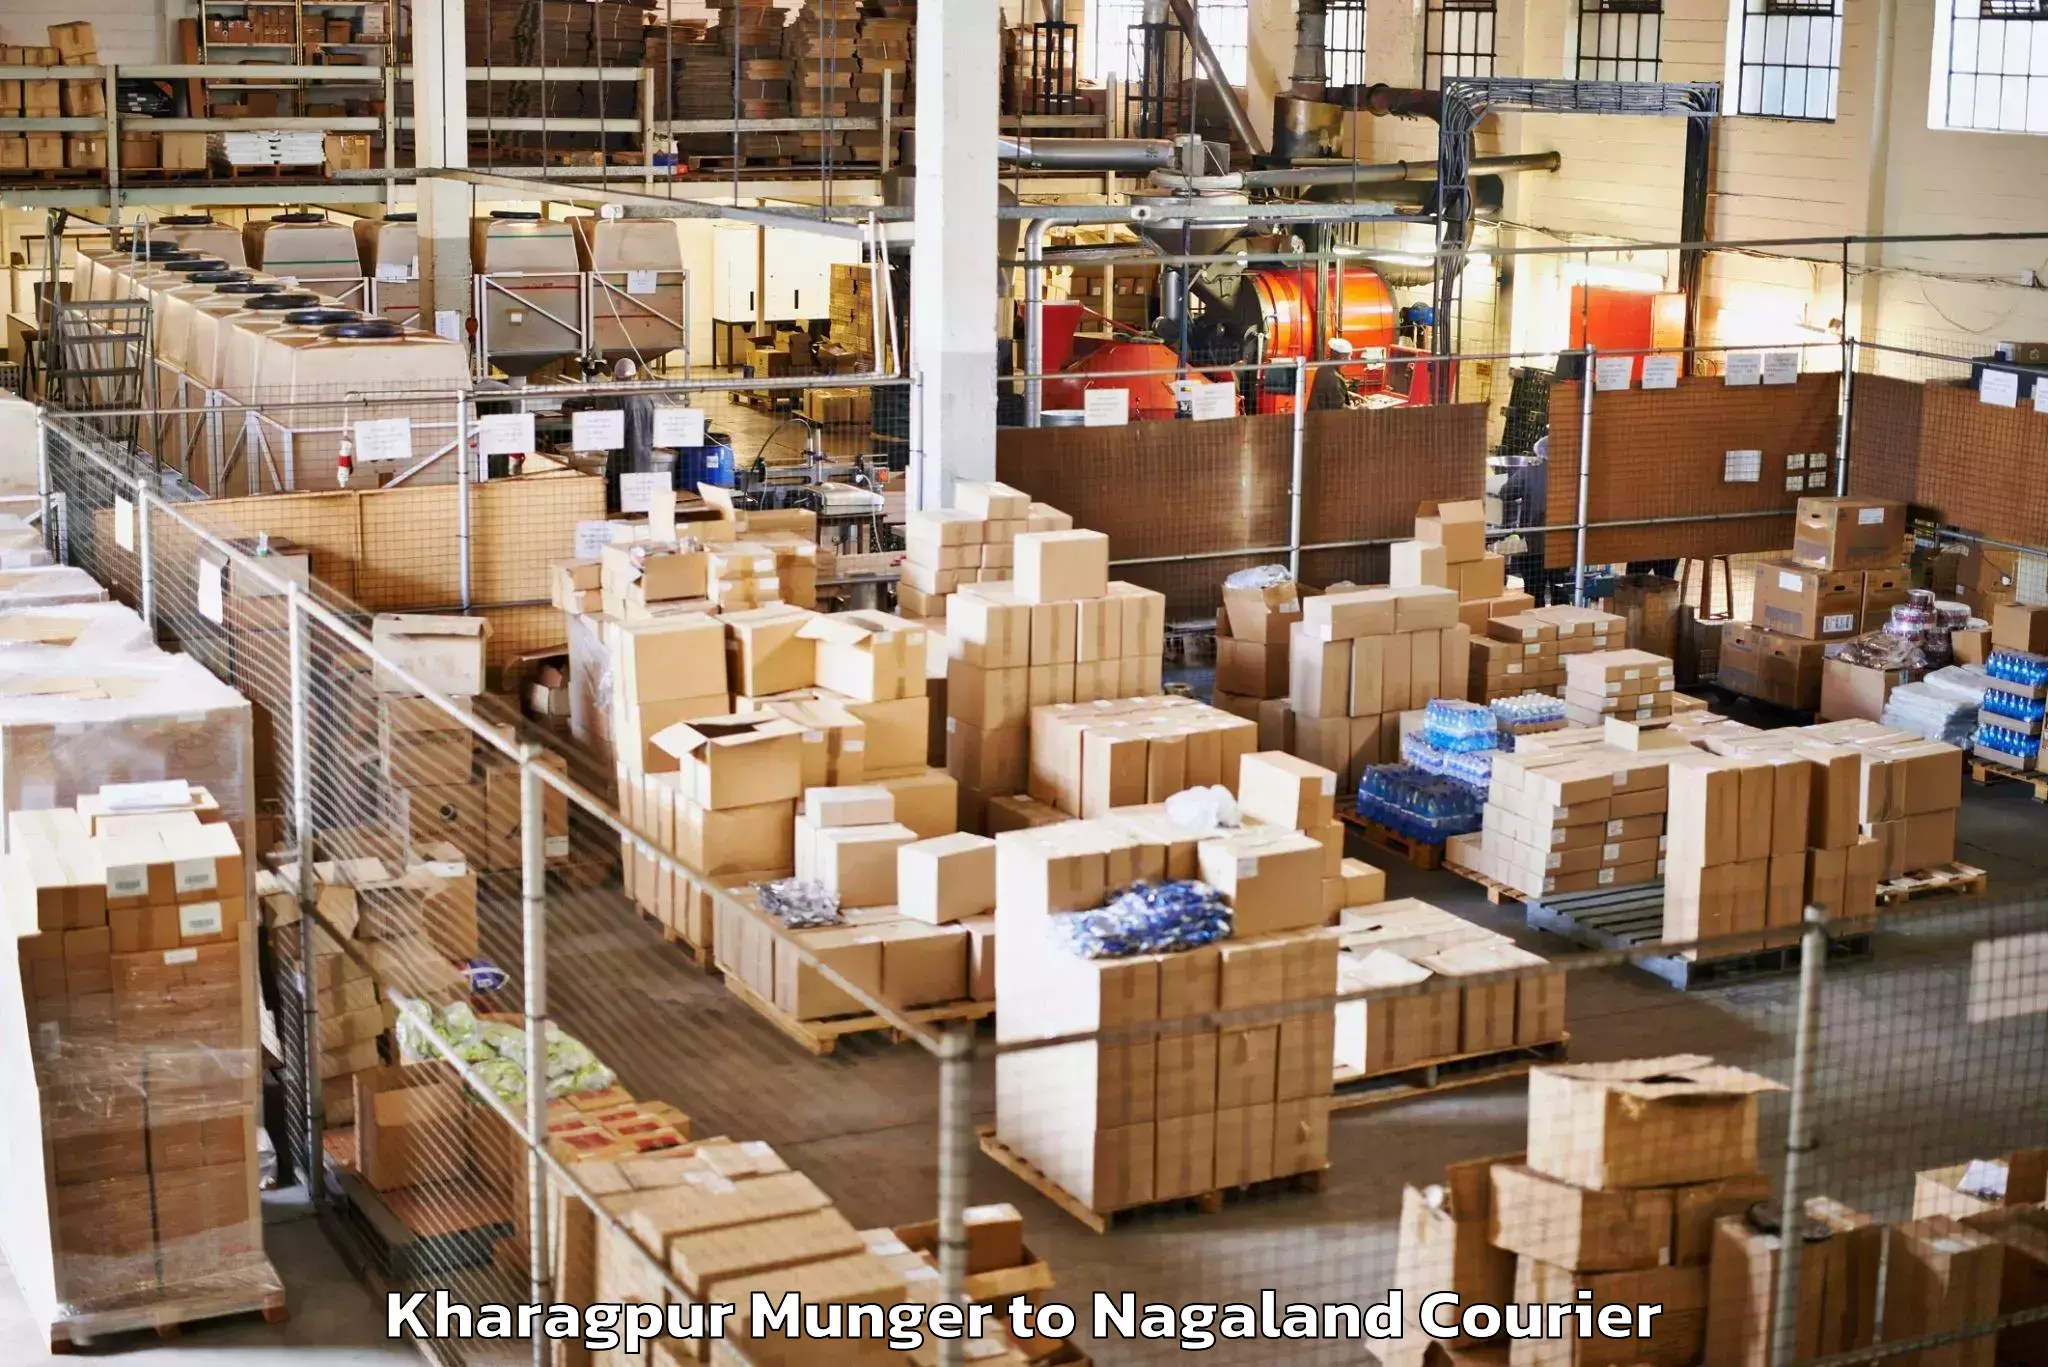 Baggage delivery optimization Kharagpur Munger to NIT Nagaland